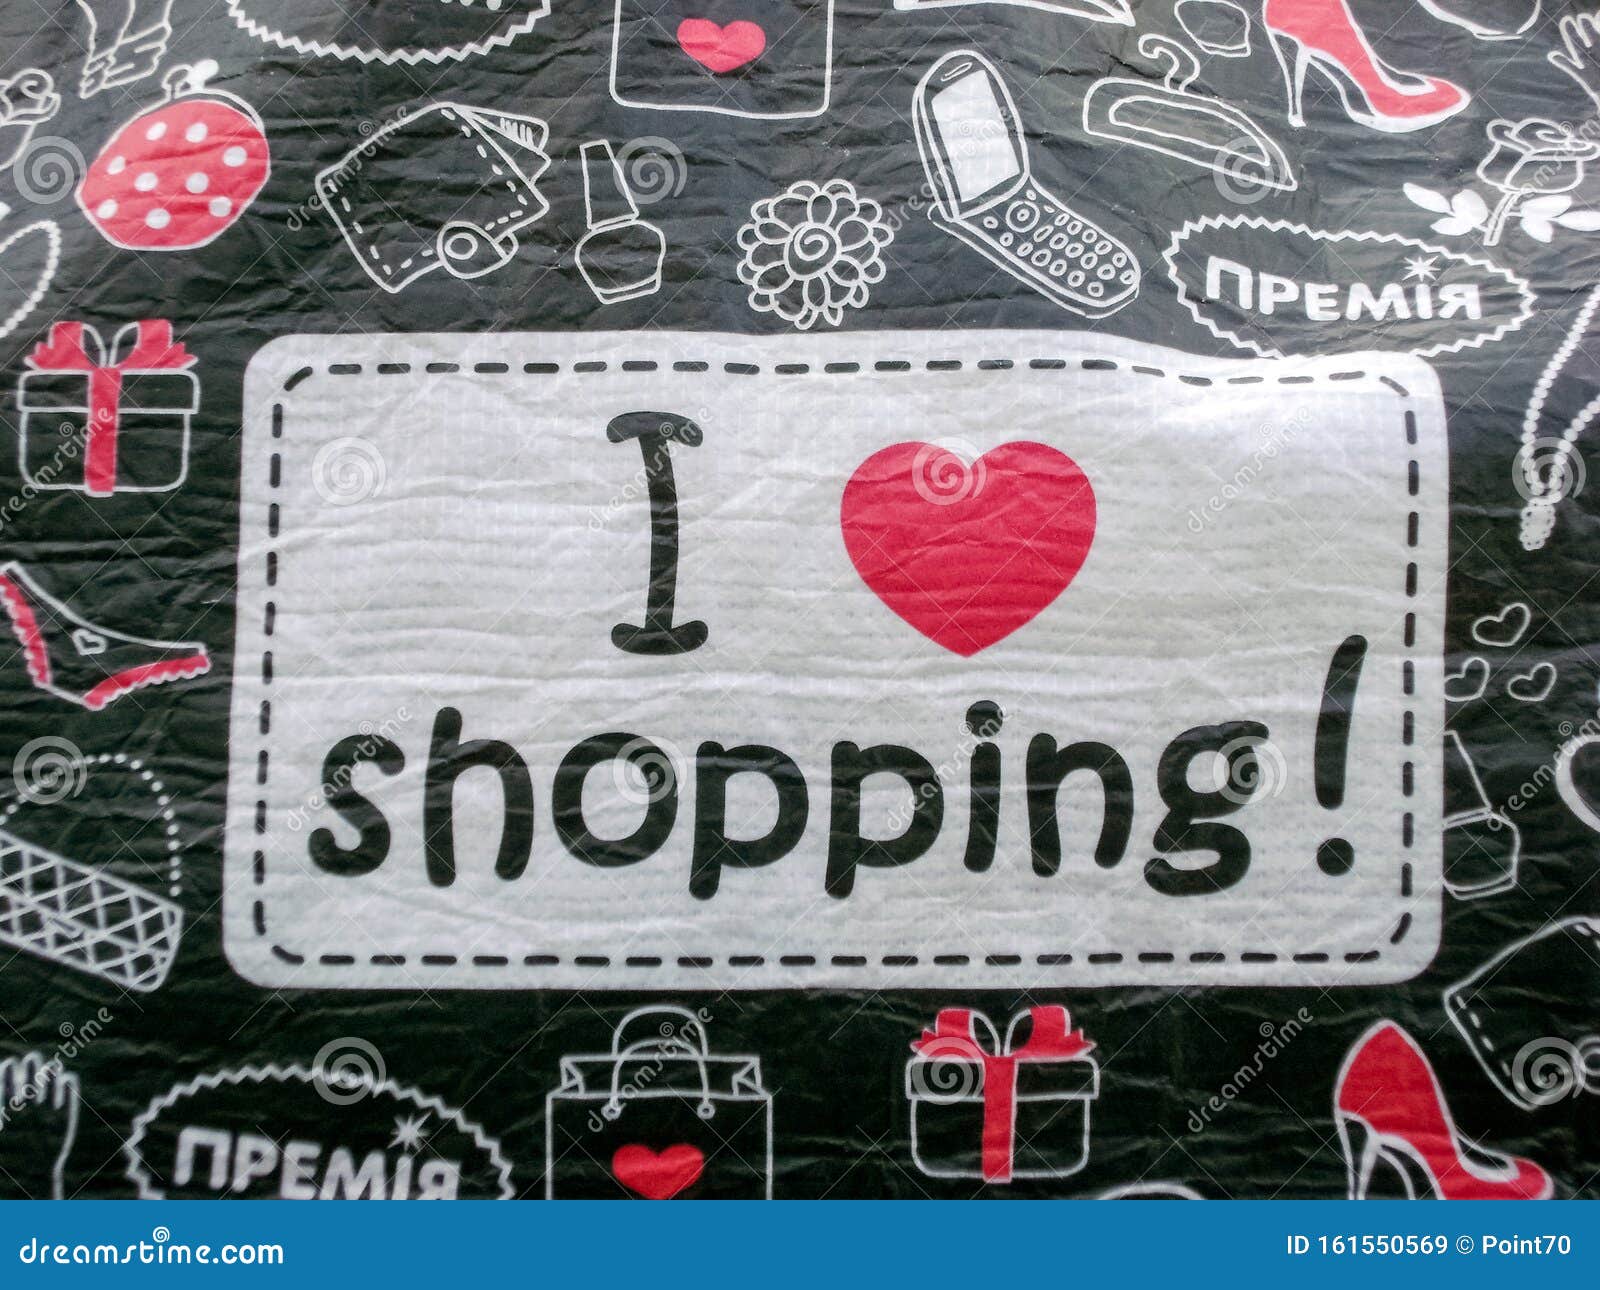 Я люблю шоппинг картинка. Love is шоппинг. Shopping is my Cardio надпись. Фото l Love you shopping надпись. One love shop